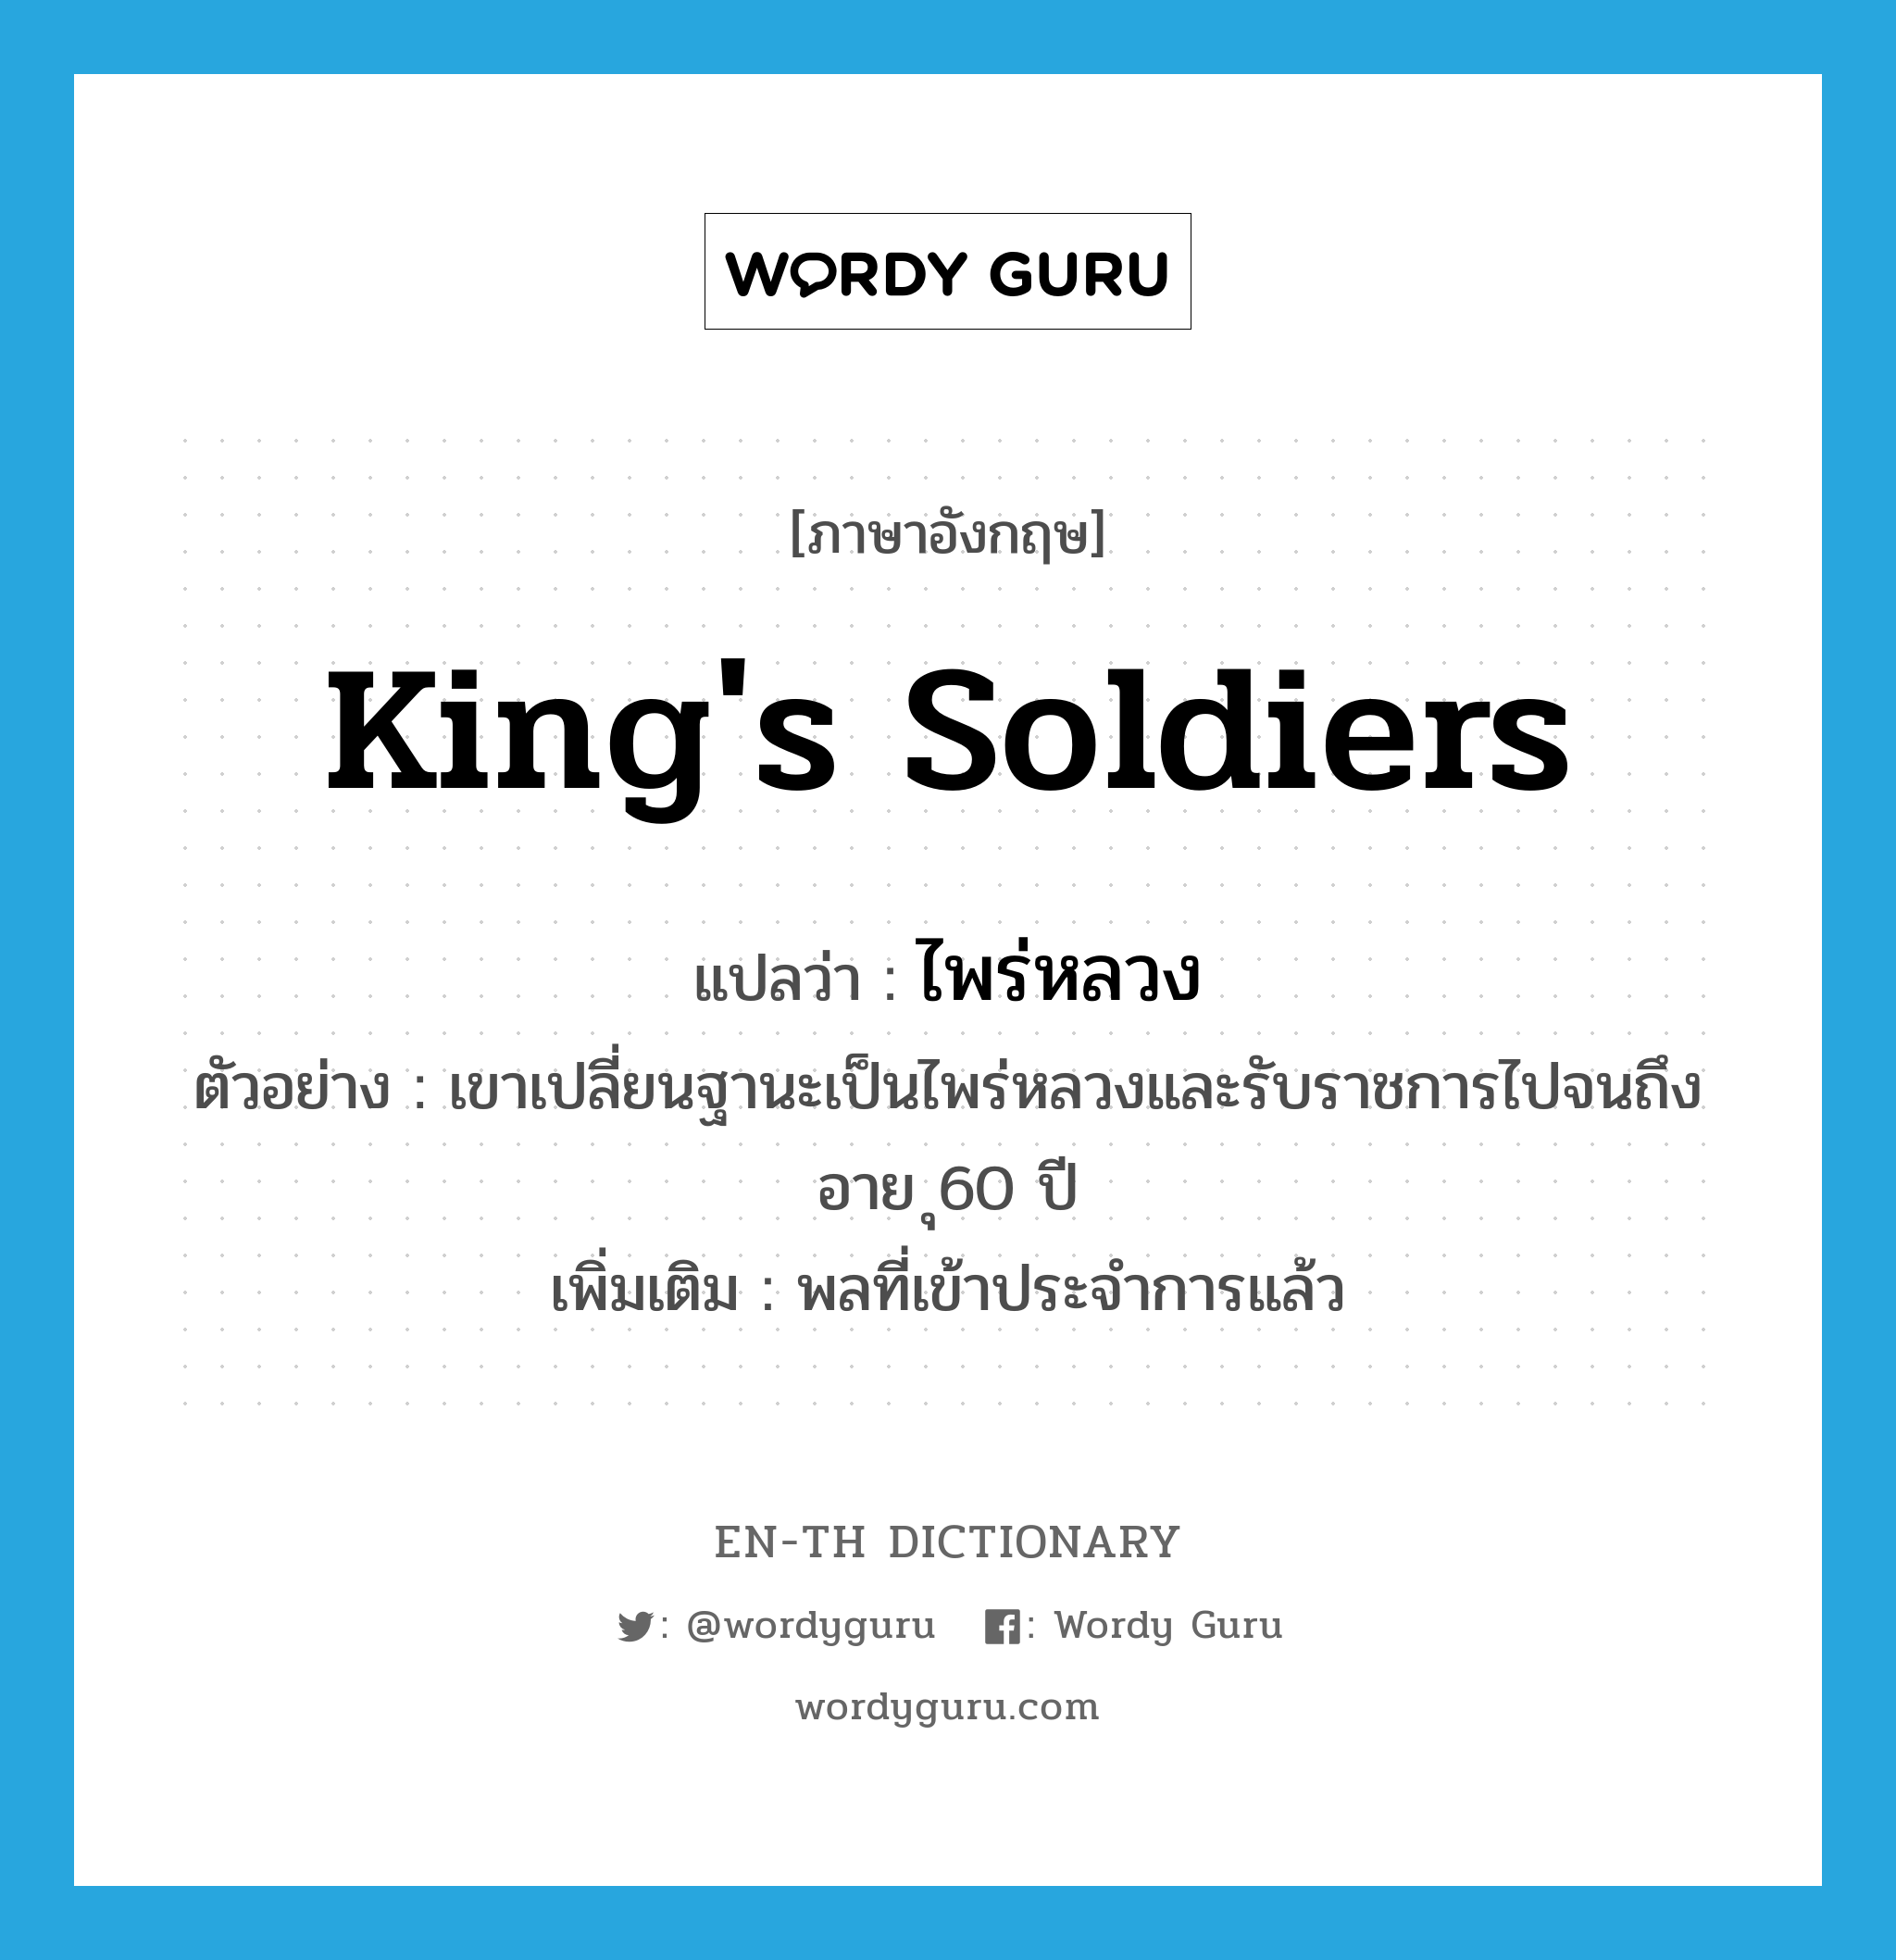 king's soldiers แปลว่า?, คำศัพท์ภาษาอังกฤษ king's soldiers แปลว่า ไพร่หลวง ประเภท N ตัวอย่าง เขาเปลี่ยนฐานะเป็นไพร่หลวงและรับราชการไปจนถึงอาย ุ60 ปี เพิ่มเติม พลที่เข้าประจำการแล้ว หมวด N